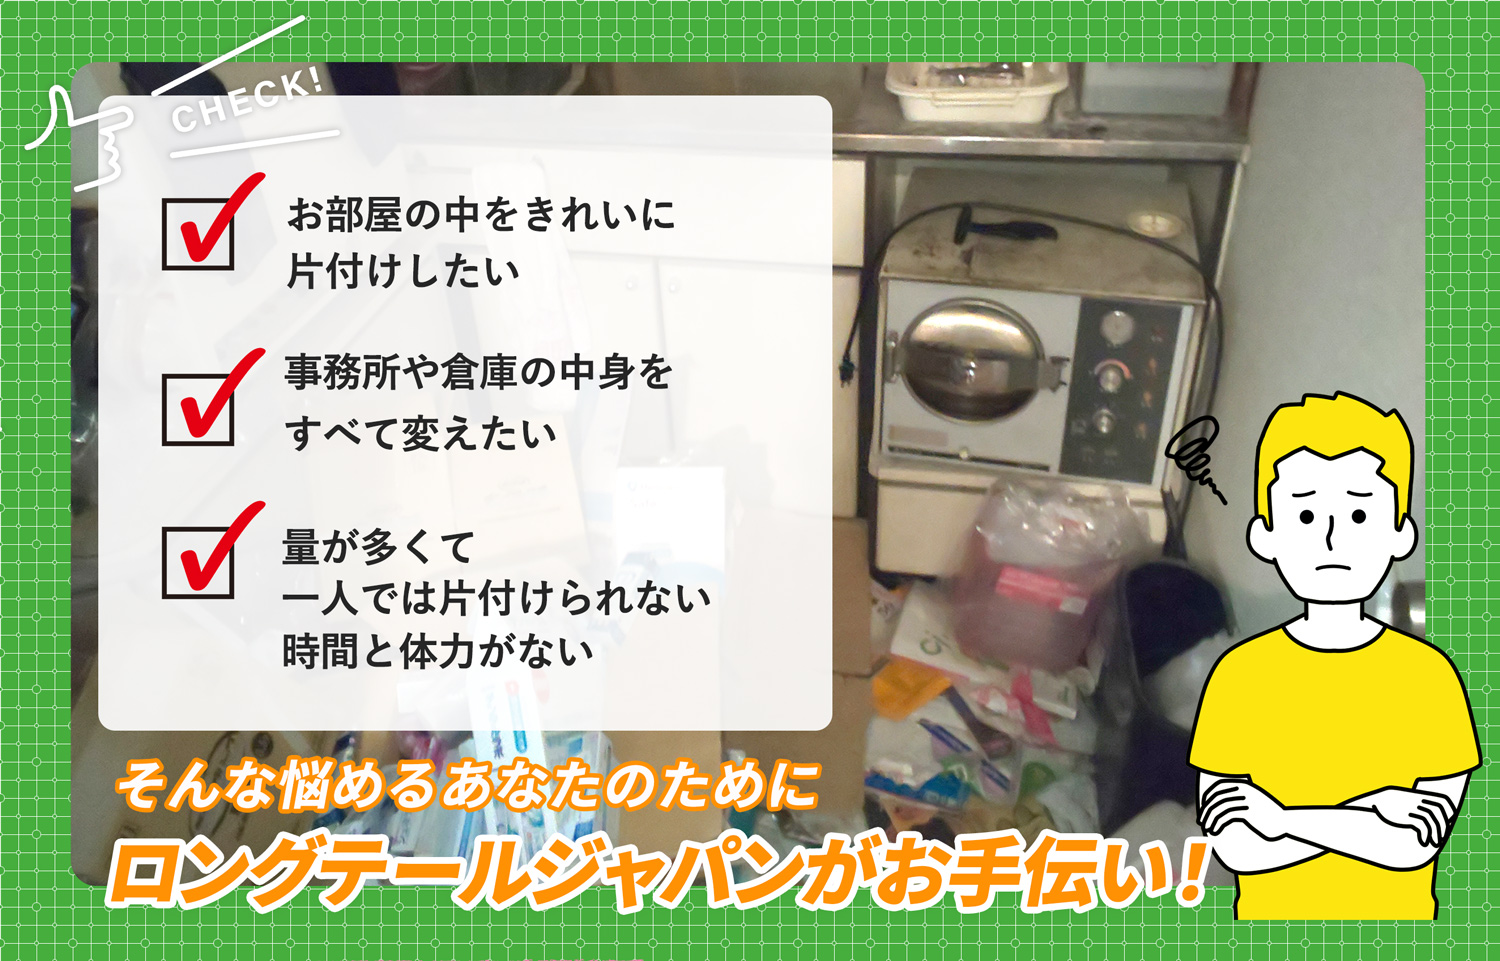 埼玉県でお部屋の中から店舗、事務所、倉庫まで自分達で片付けられない場合はお部屋の片付け隊がやらせていただきます。